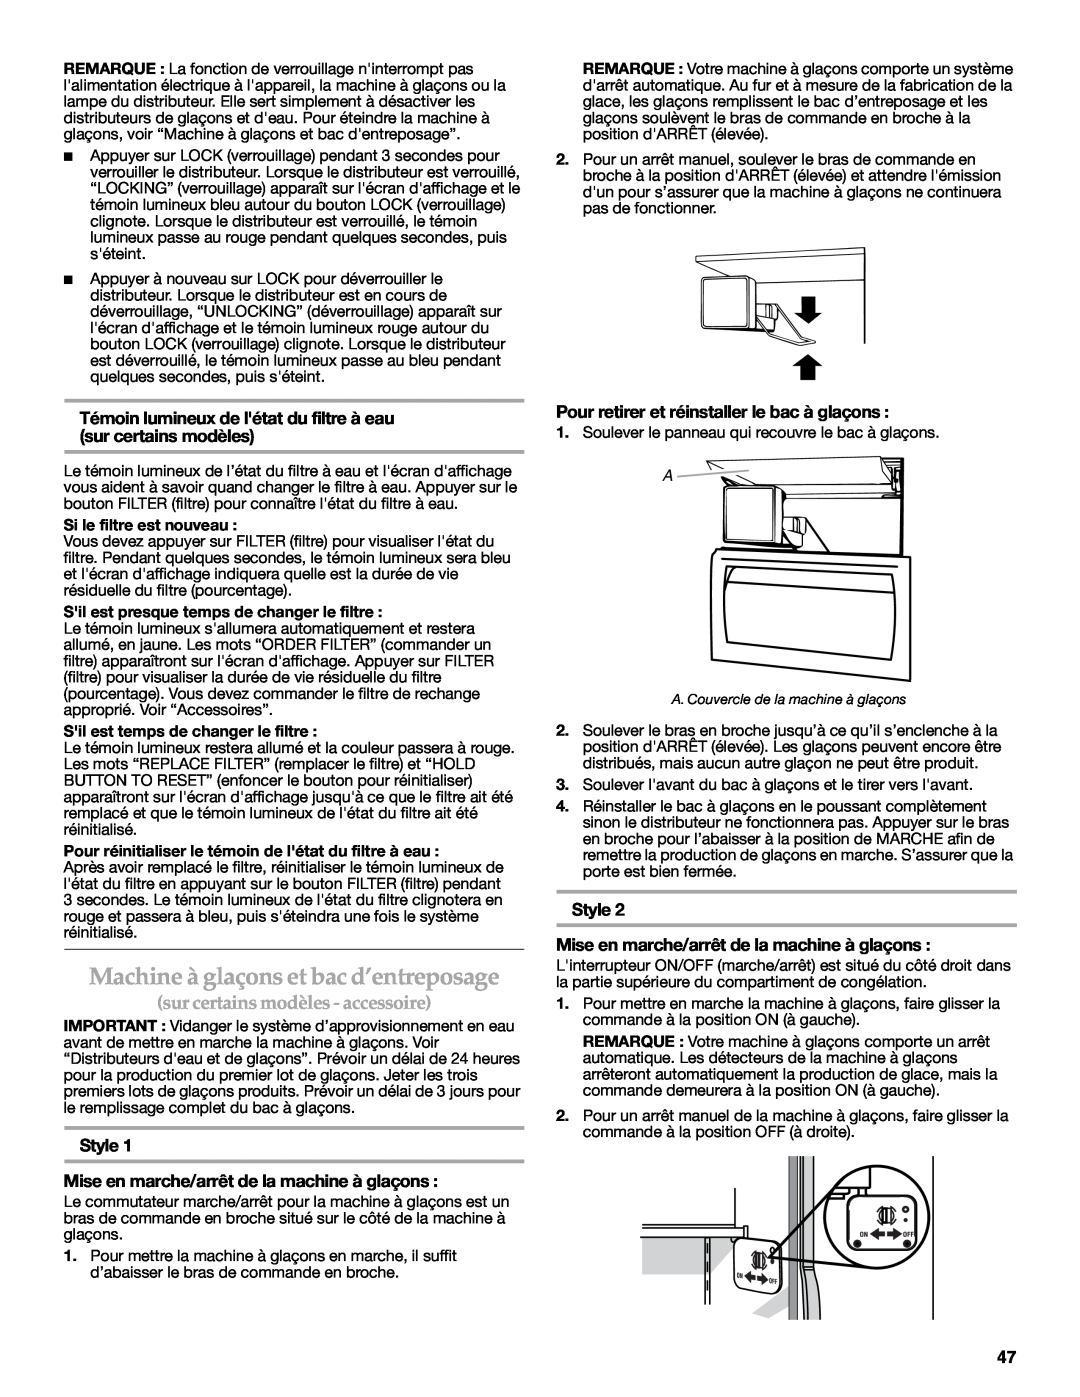 KitchenAid W10303989A, KSSC48QVS manual Machine à glaçons et bac d’entreposage, sur certains modèles - accessoire 